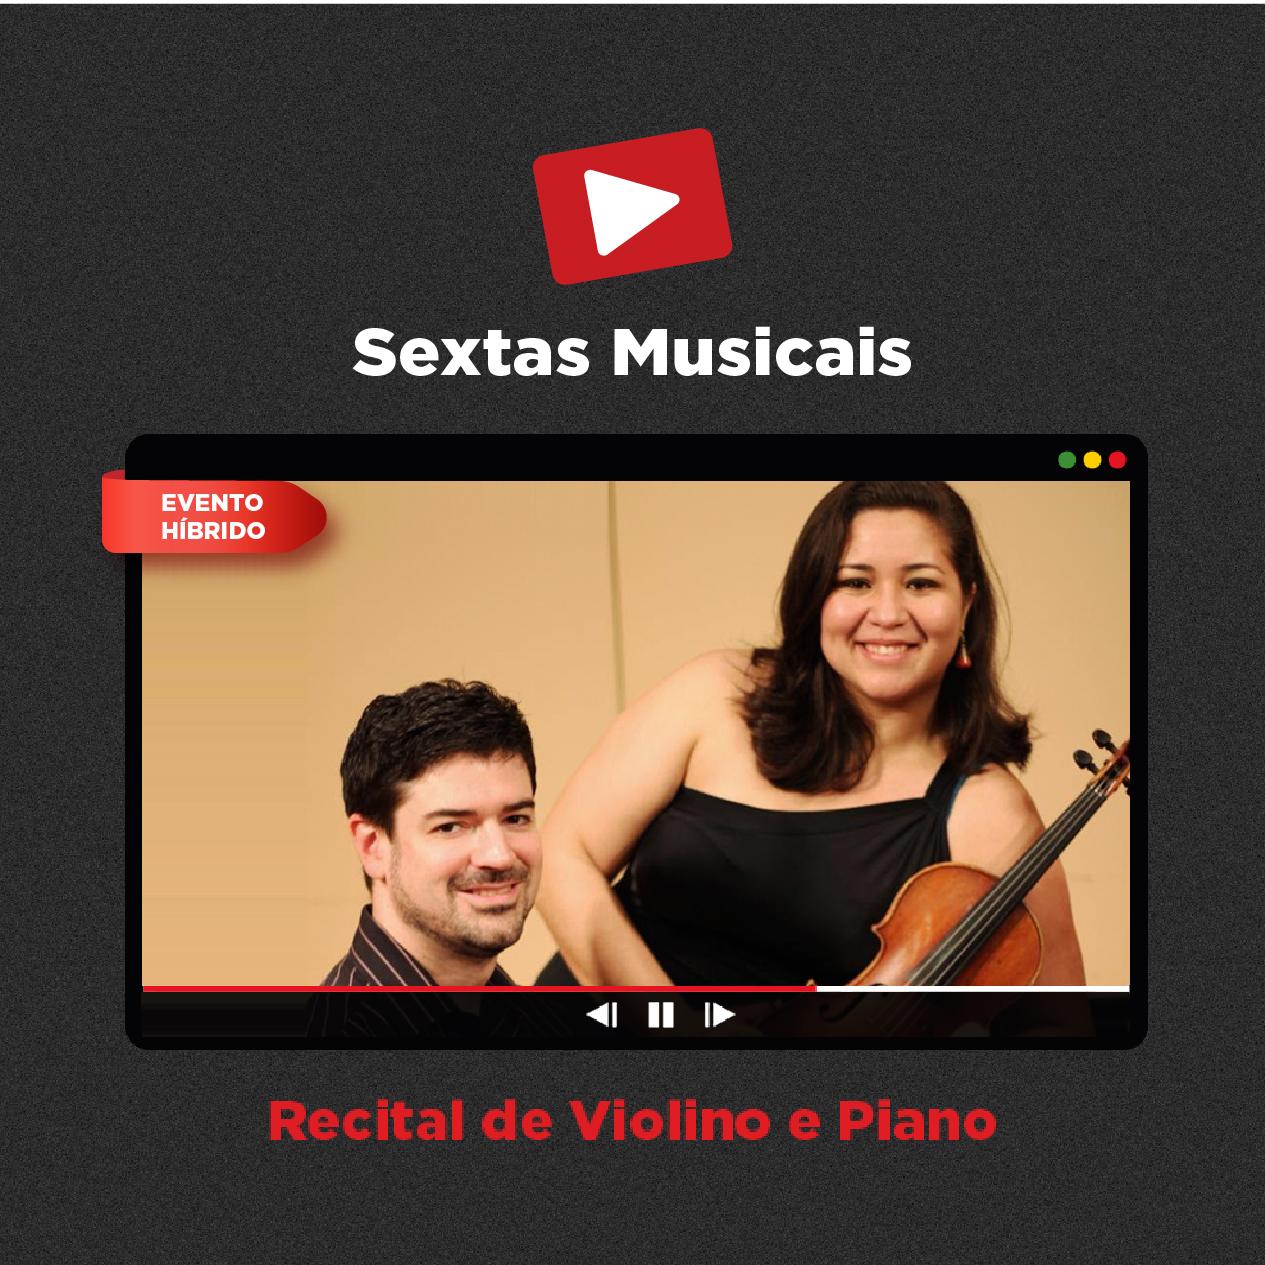 Sextas Musicais - Live Streaming: Recital de Violino e Piano